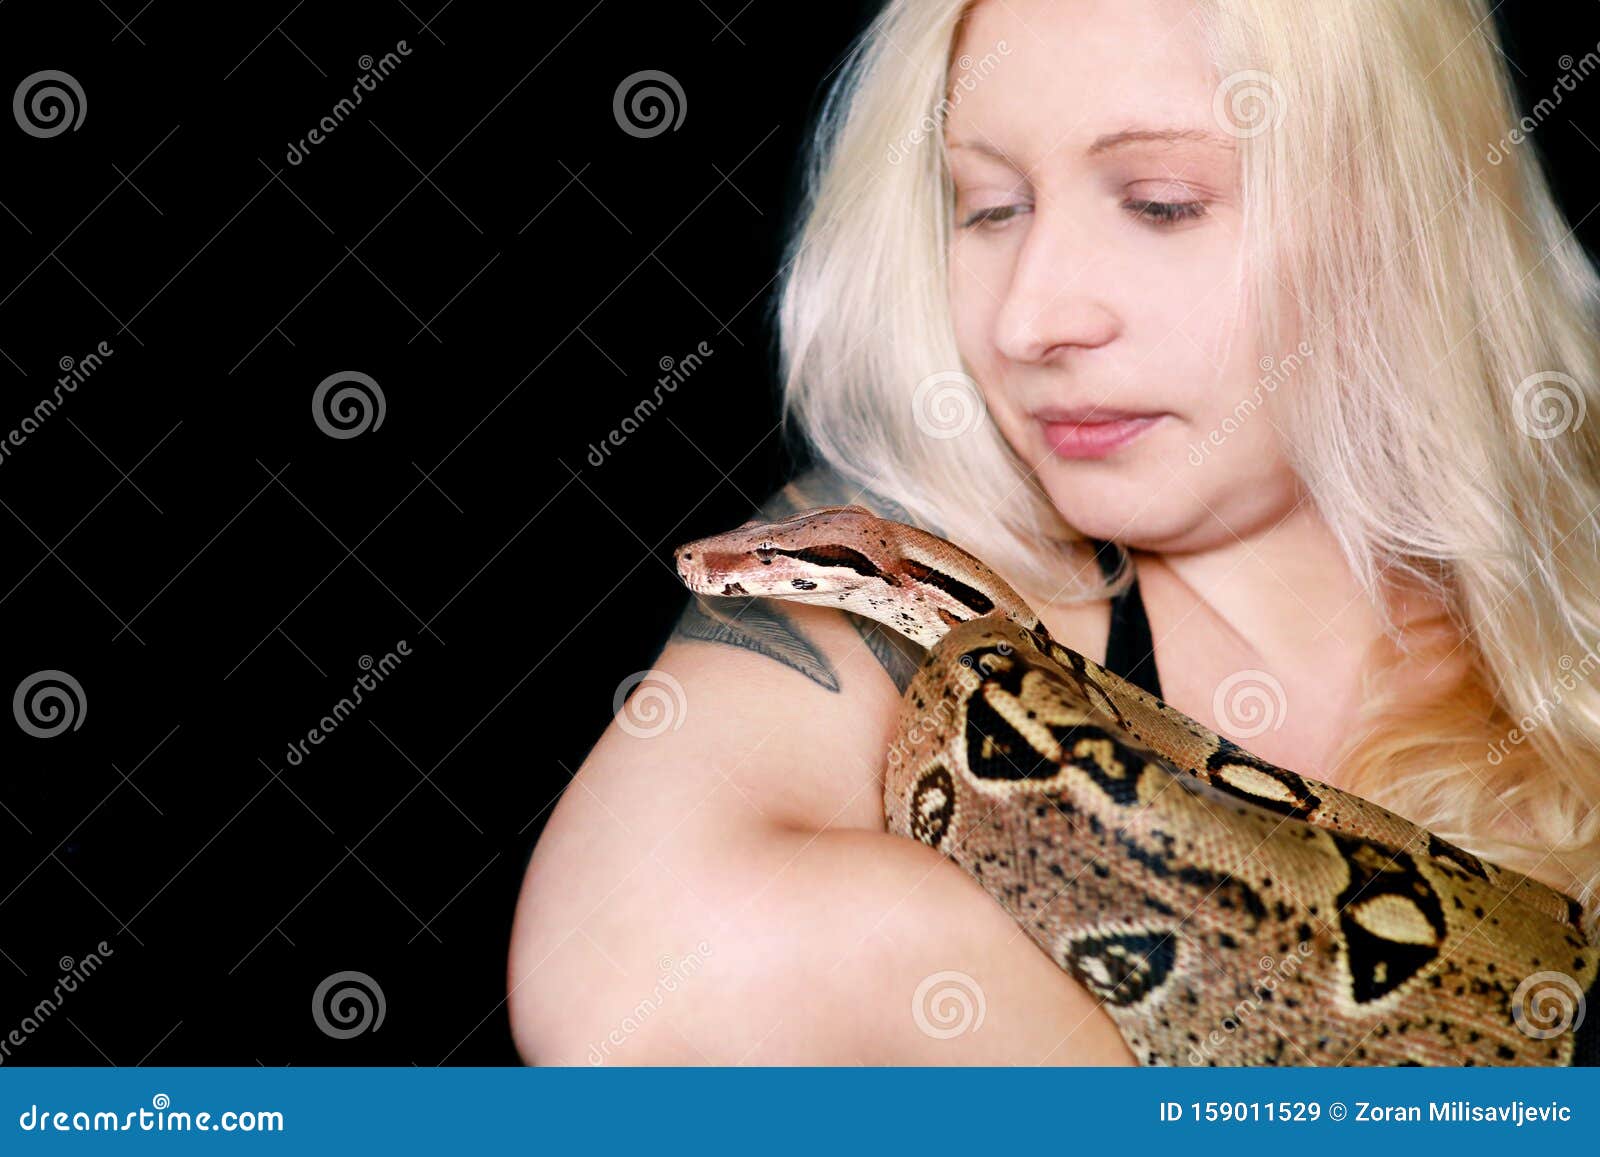 Держать змею в руках. Девушка держит змею в руках фото. Девушка держит змею на теле красиво. Человек держит змею перед лицом.